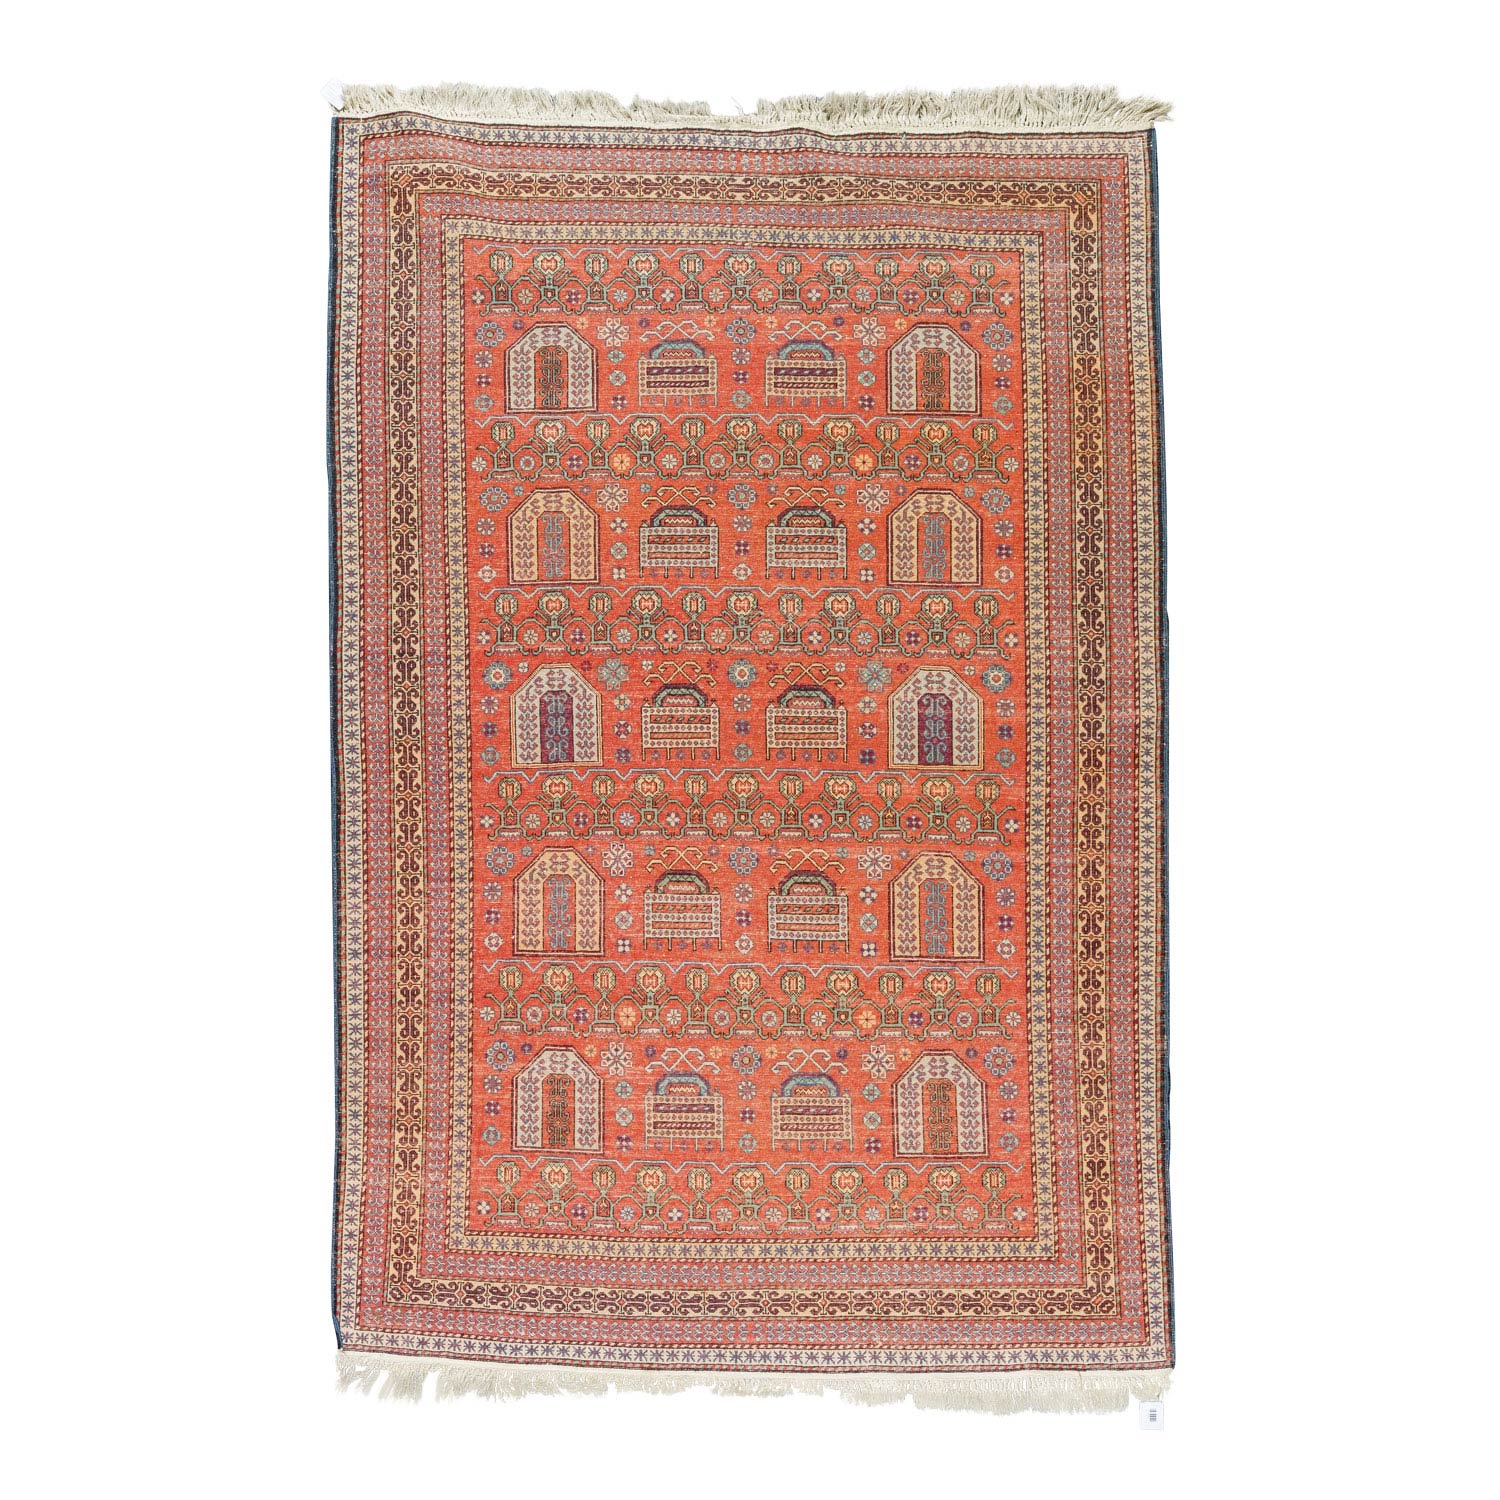 Orientteppich. PAKISTAN, 20. Jh., 214x142 cm.Rotgrundiges Innenfeld mit geometrischer Musterung, - Image 2 of 5